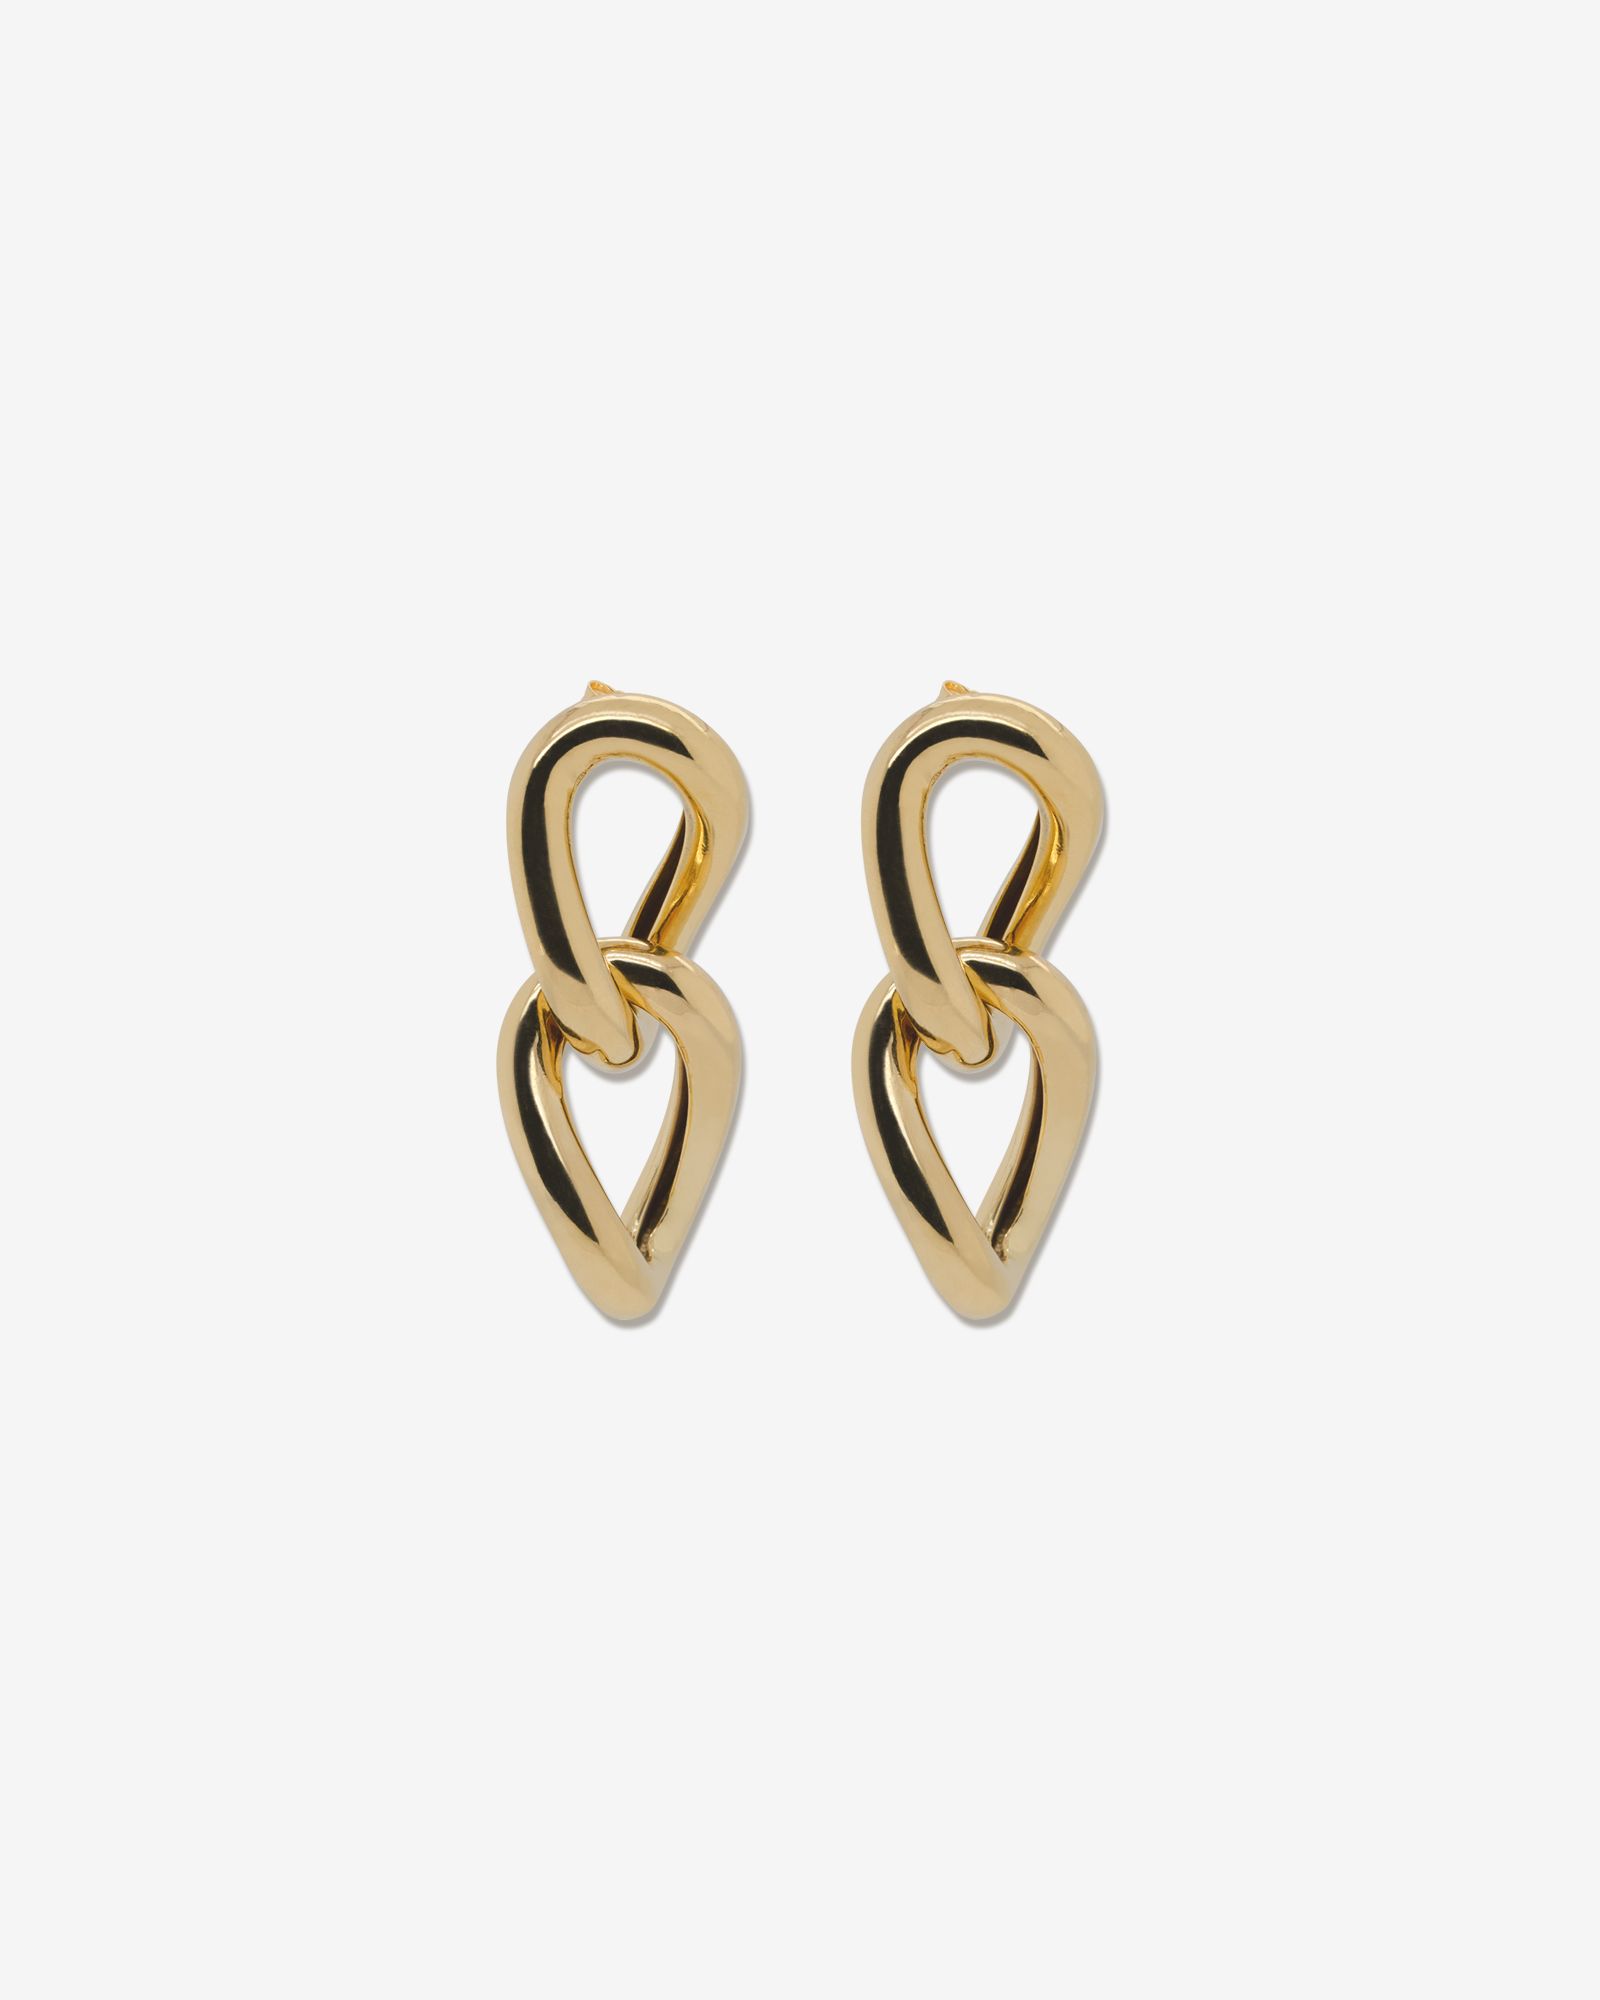 Miya – earrings